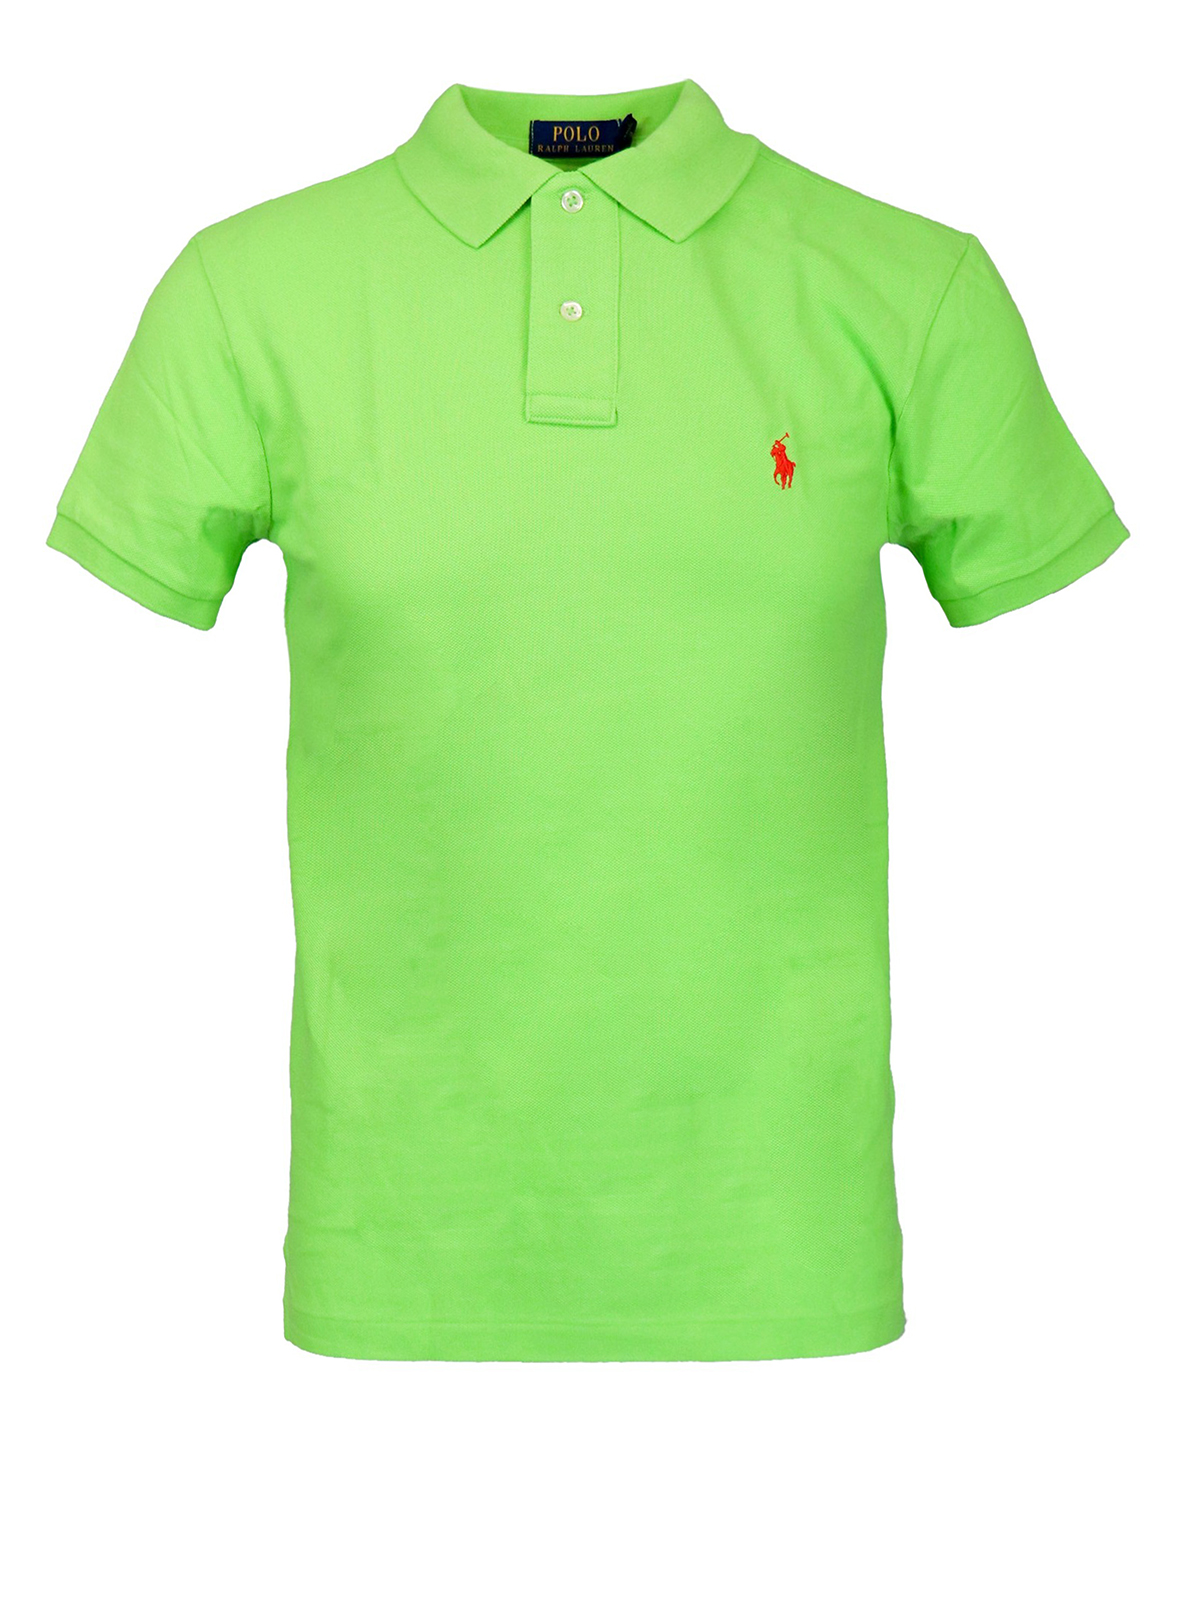 Polo Ralph Lauren Yellow Pique Cotton Polo Shirt In Green